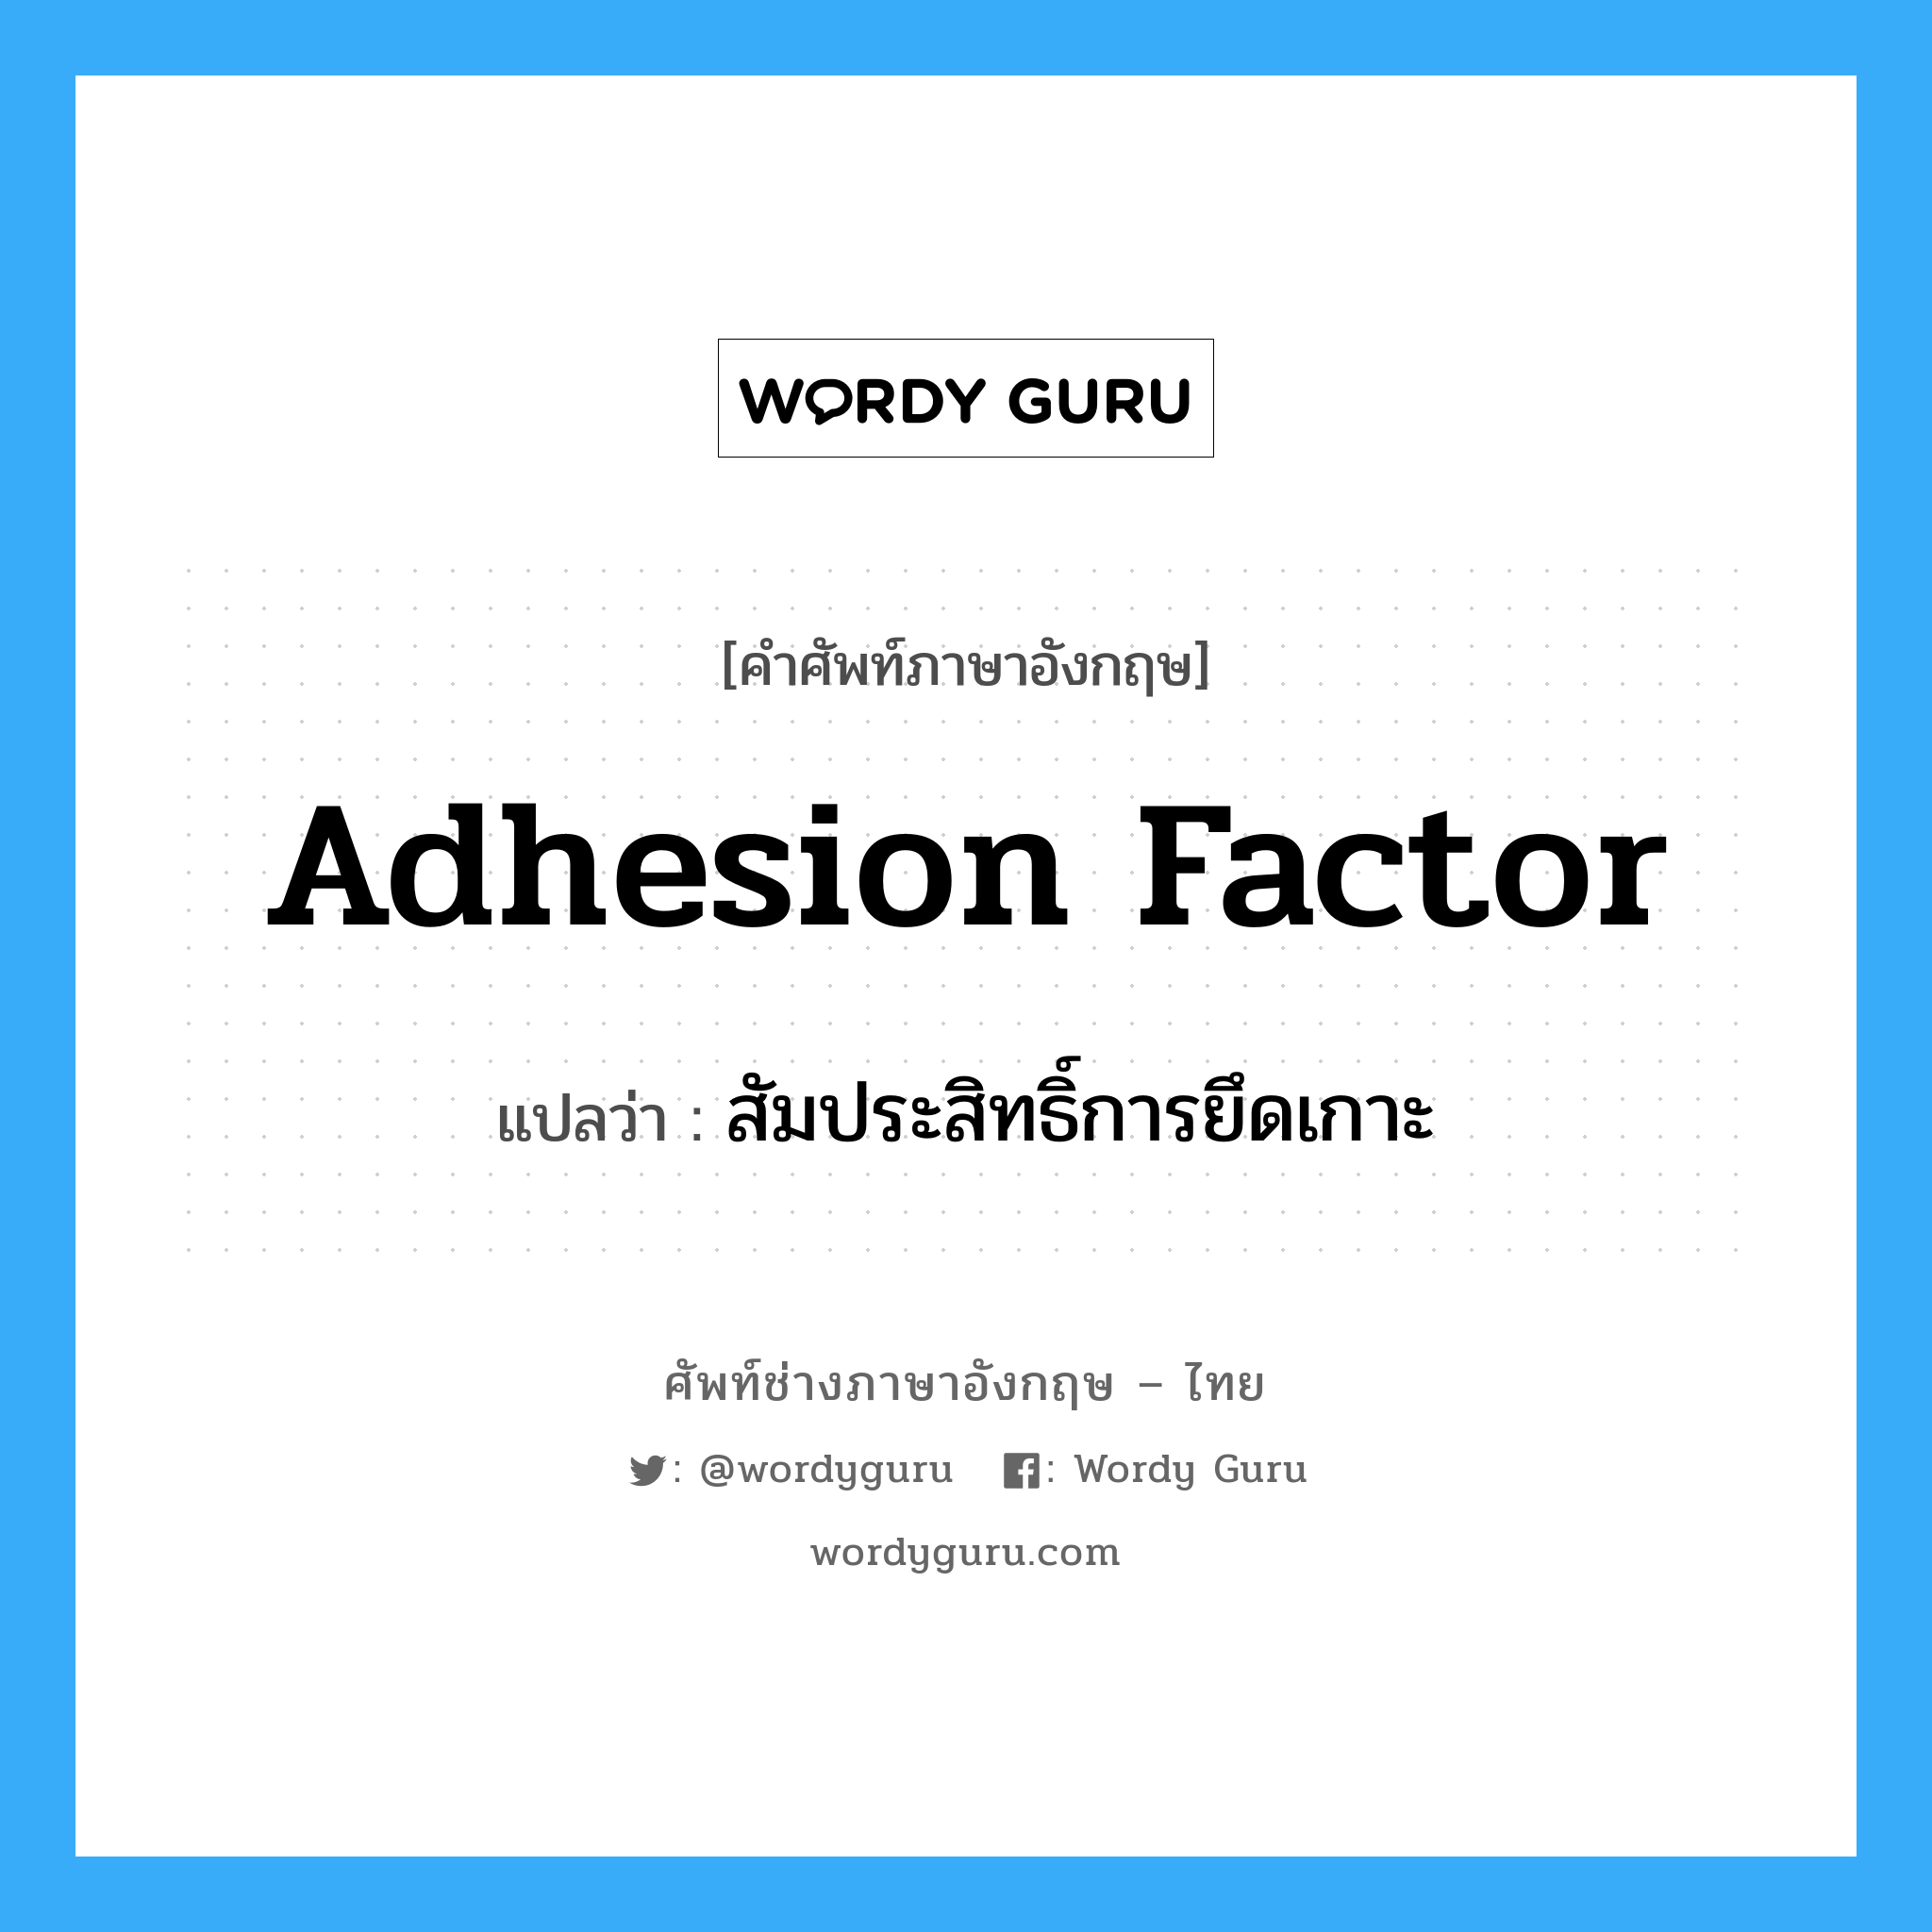 adhesion factor แปลว่า?, คำศัพท์ช่างภาษาอังกฤษ - ไทย adhesion factor คำศัพท์ภาษาอังกฤษ adhesion factor แปลว่า สัมประสิทธิ์การยึดเกาะ